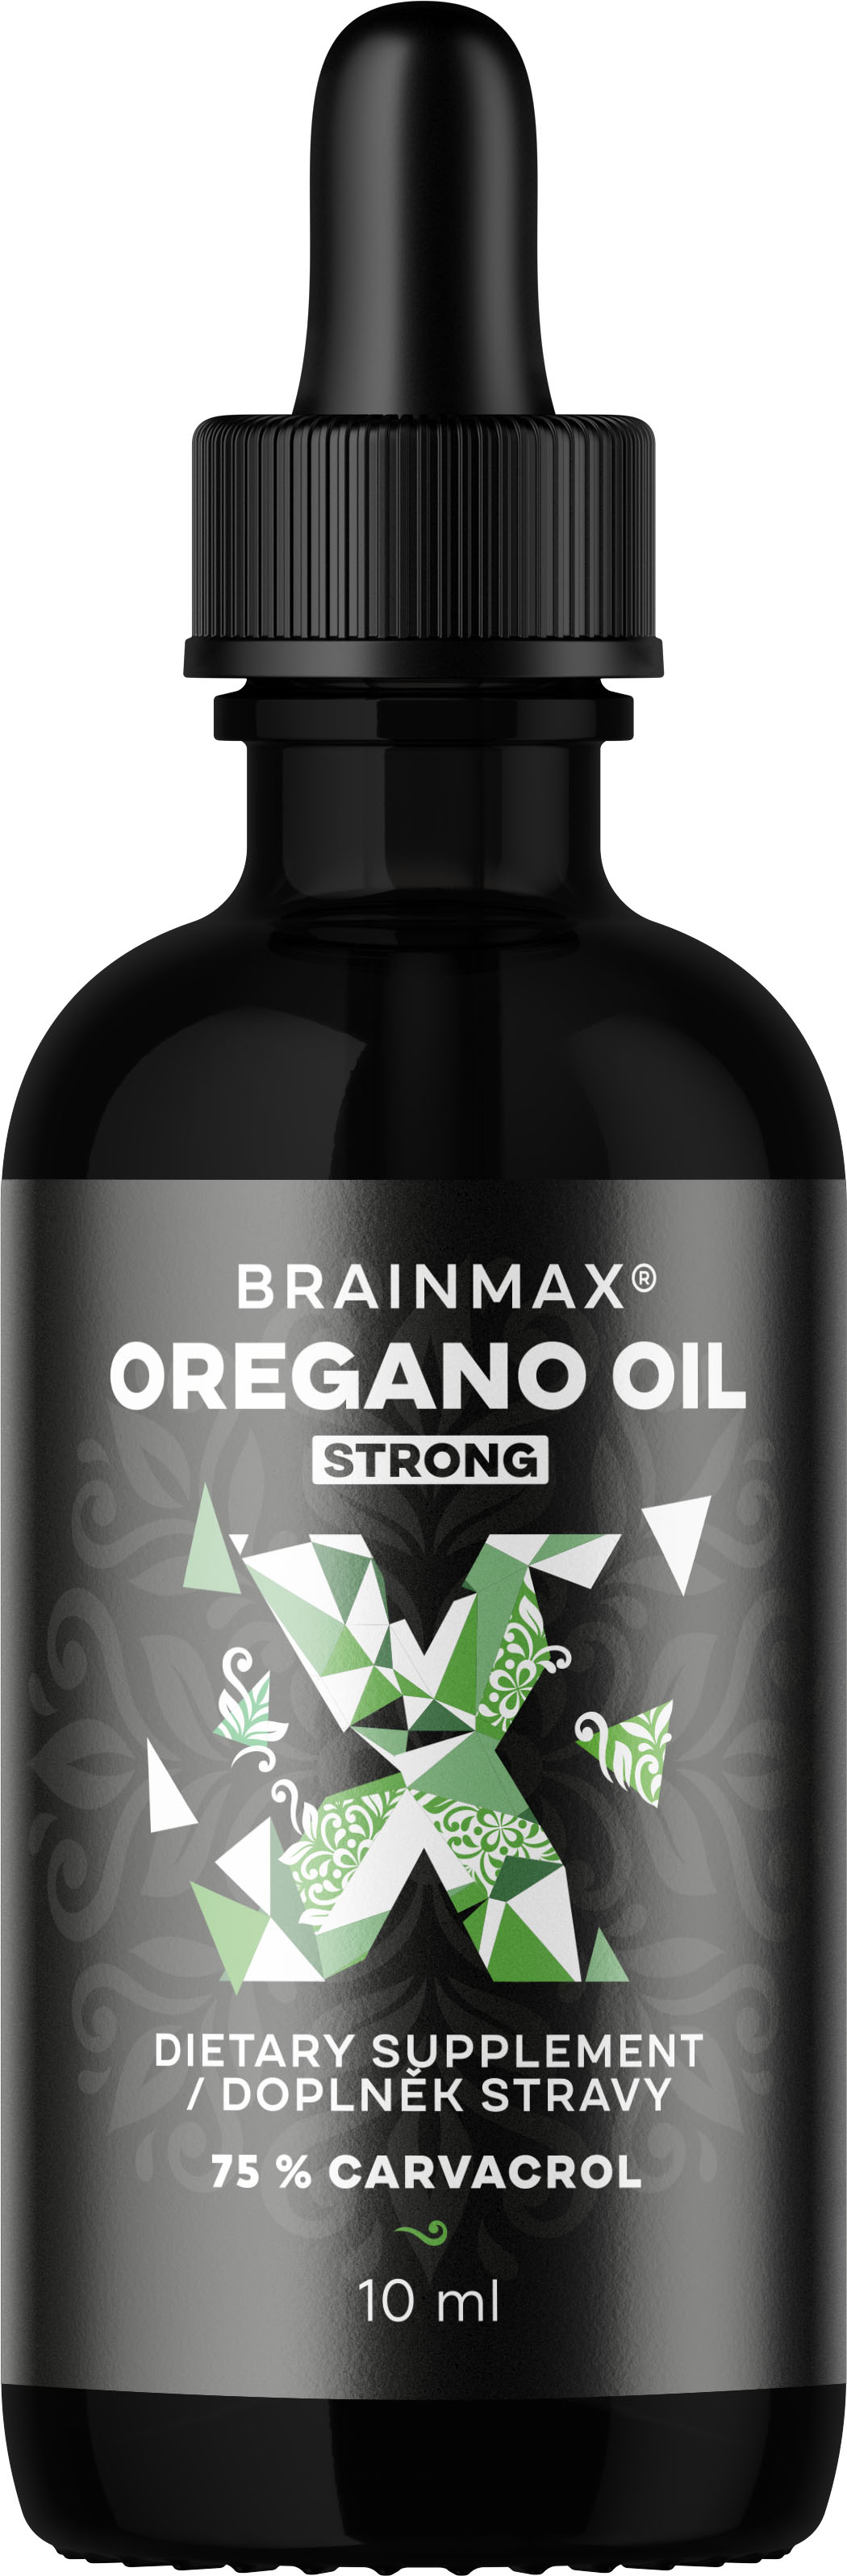 BrainMax Oregano oil, oregánový olej, 10 ml Olej z oregána s obsahem 75% karvakrolu, doplněk stravy